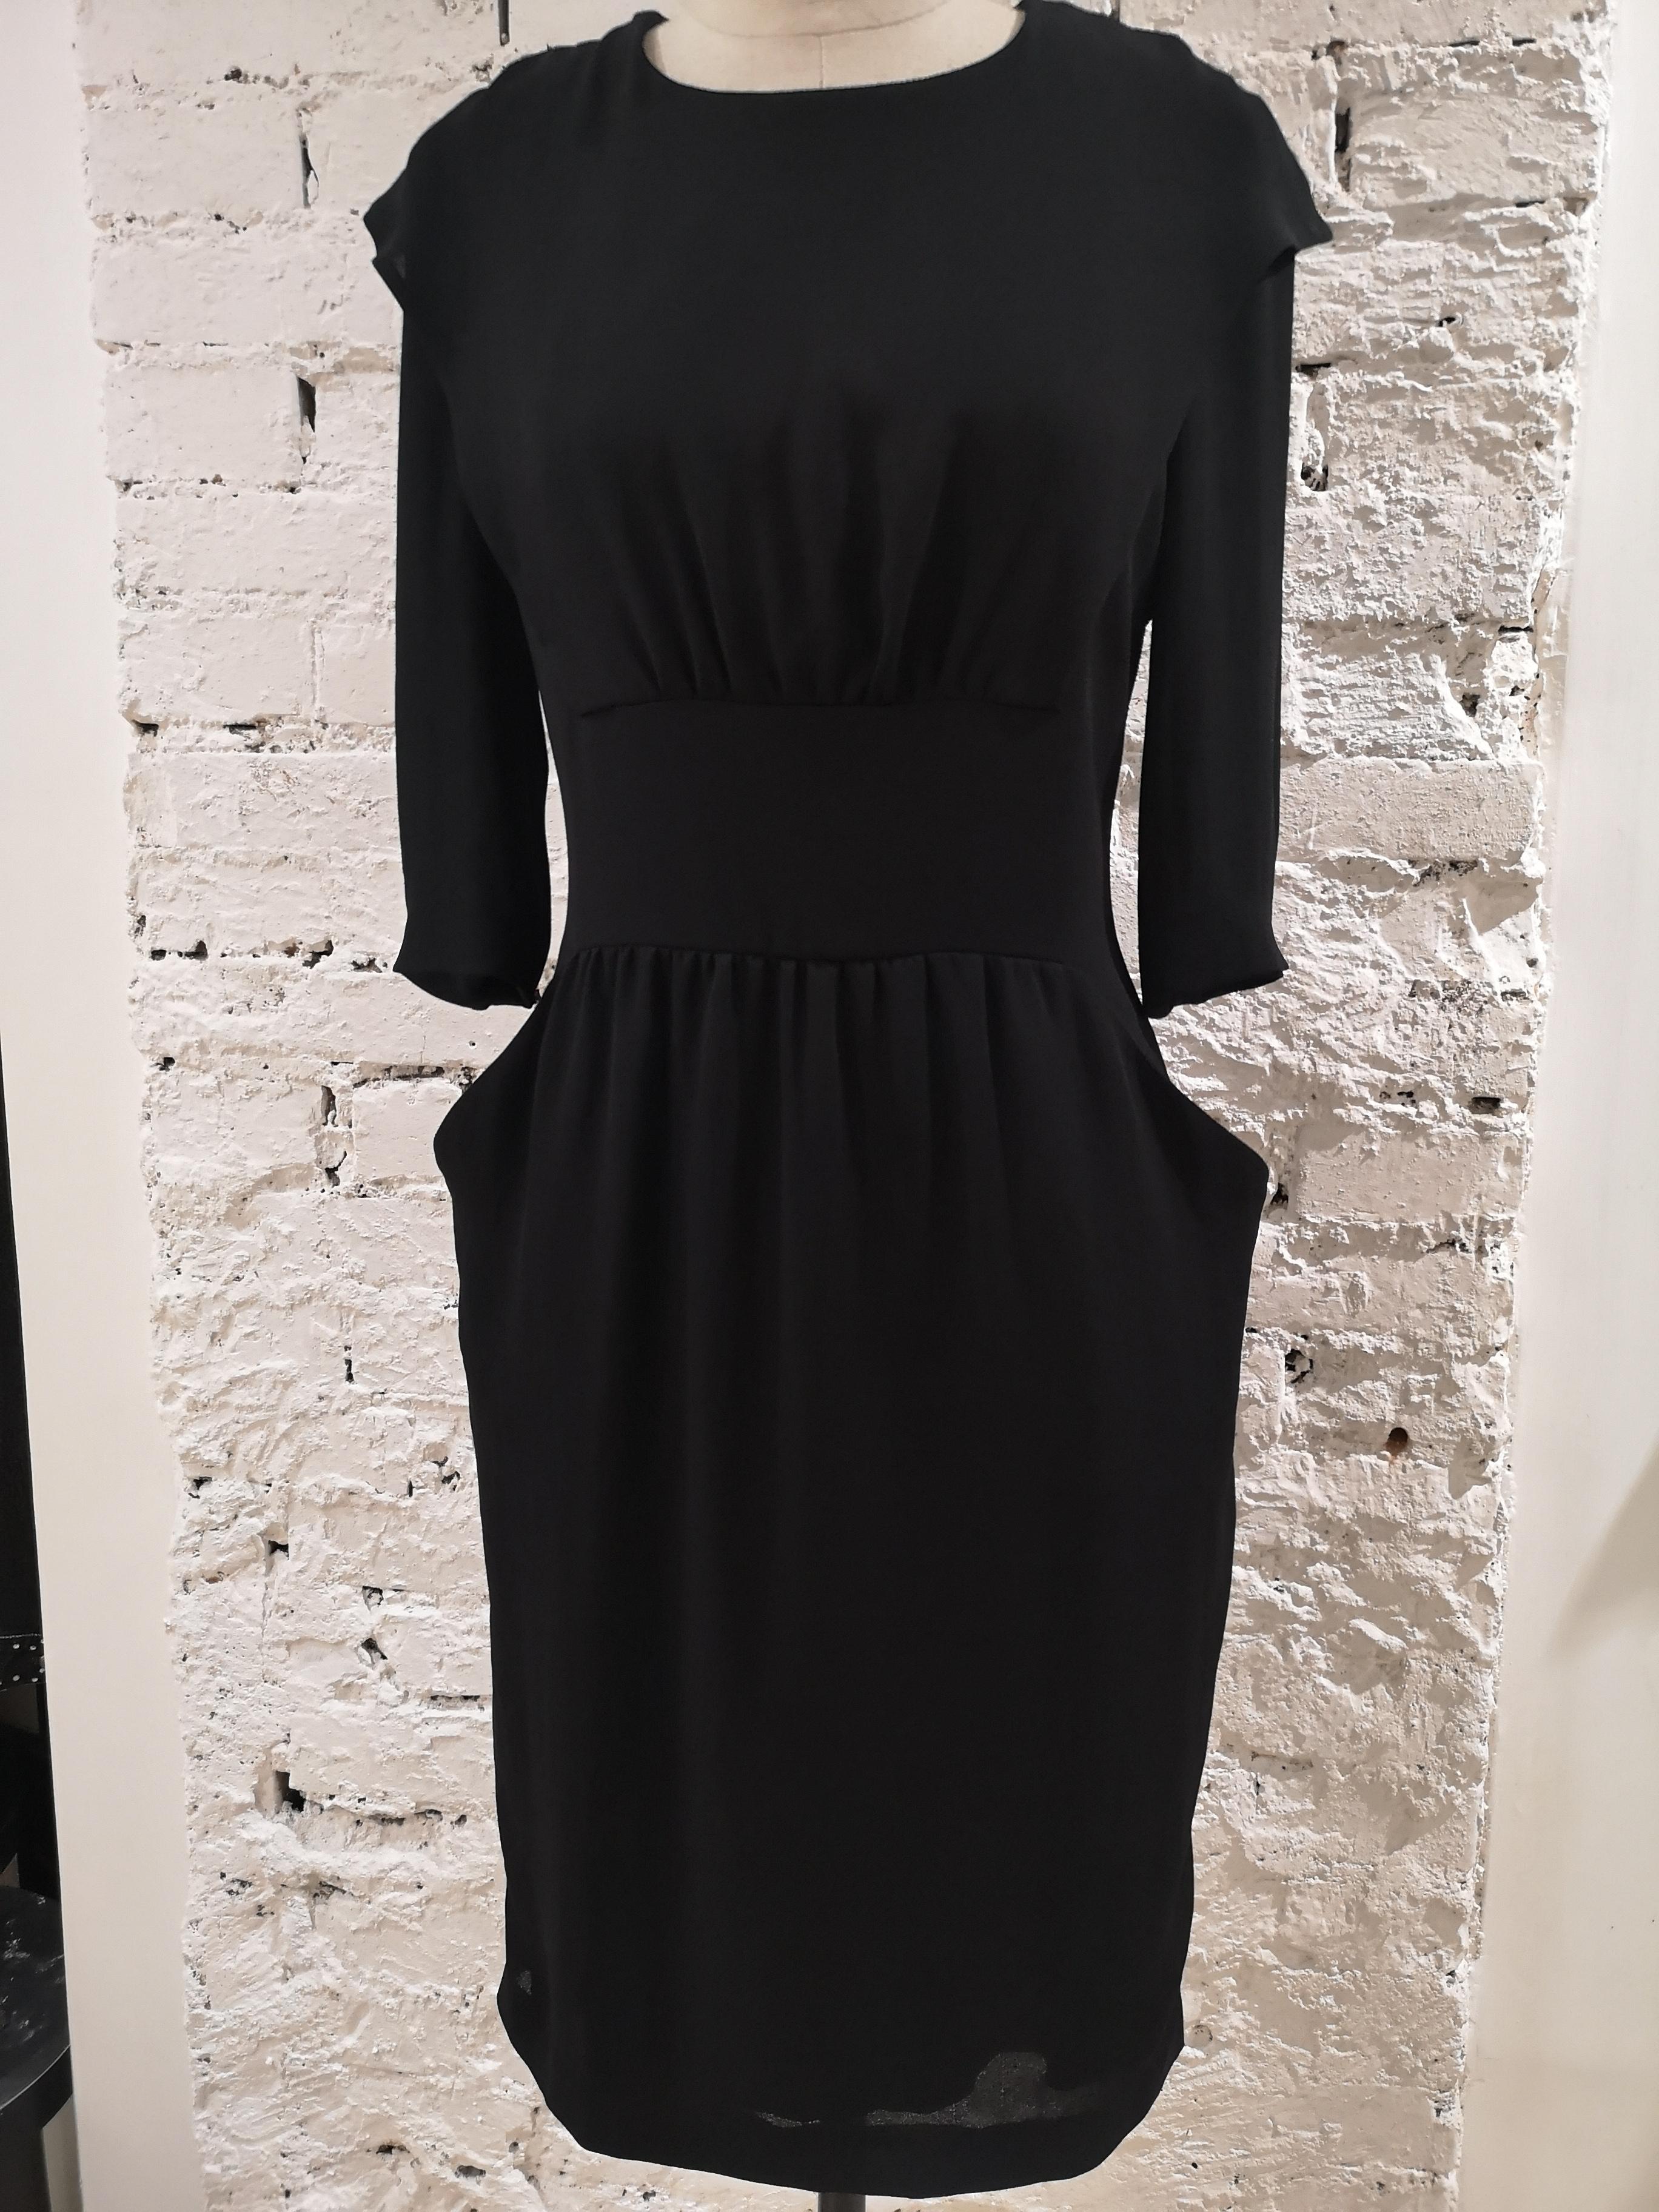 Women's Prada black dress